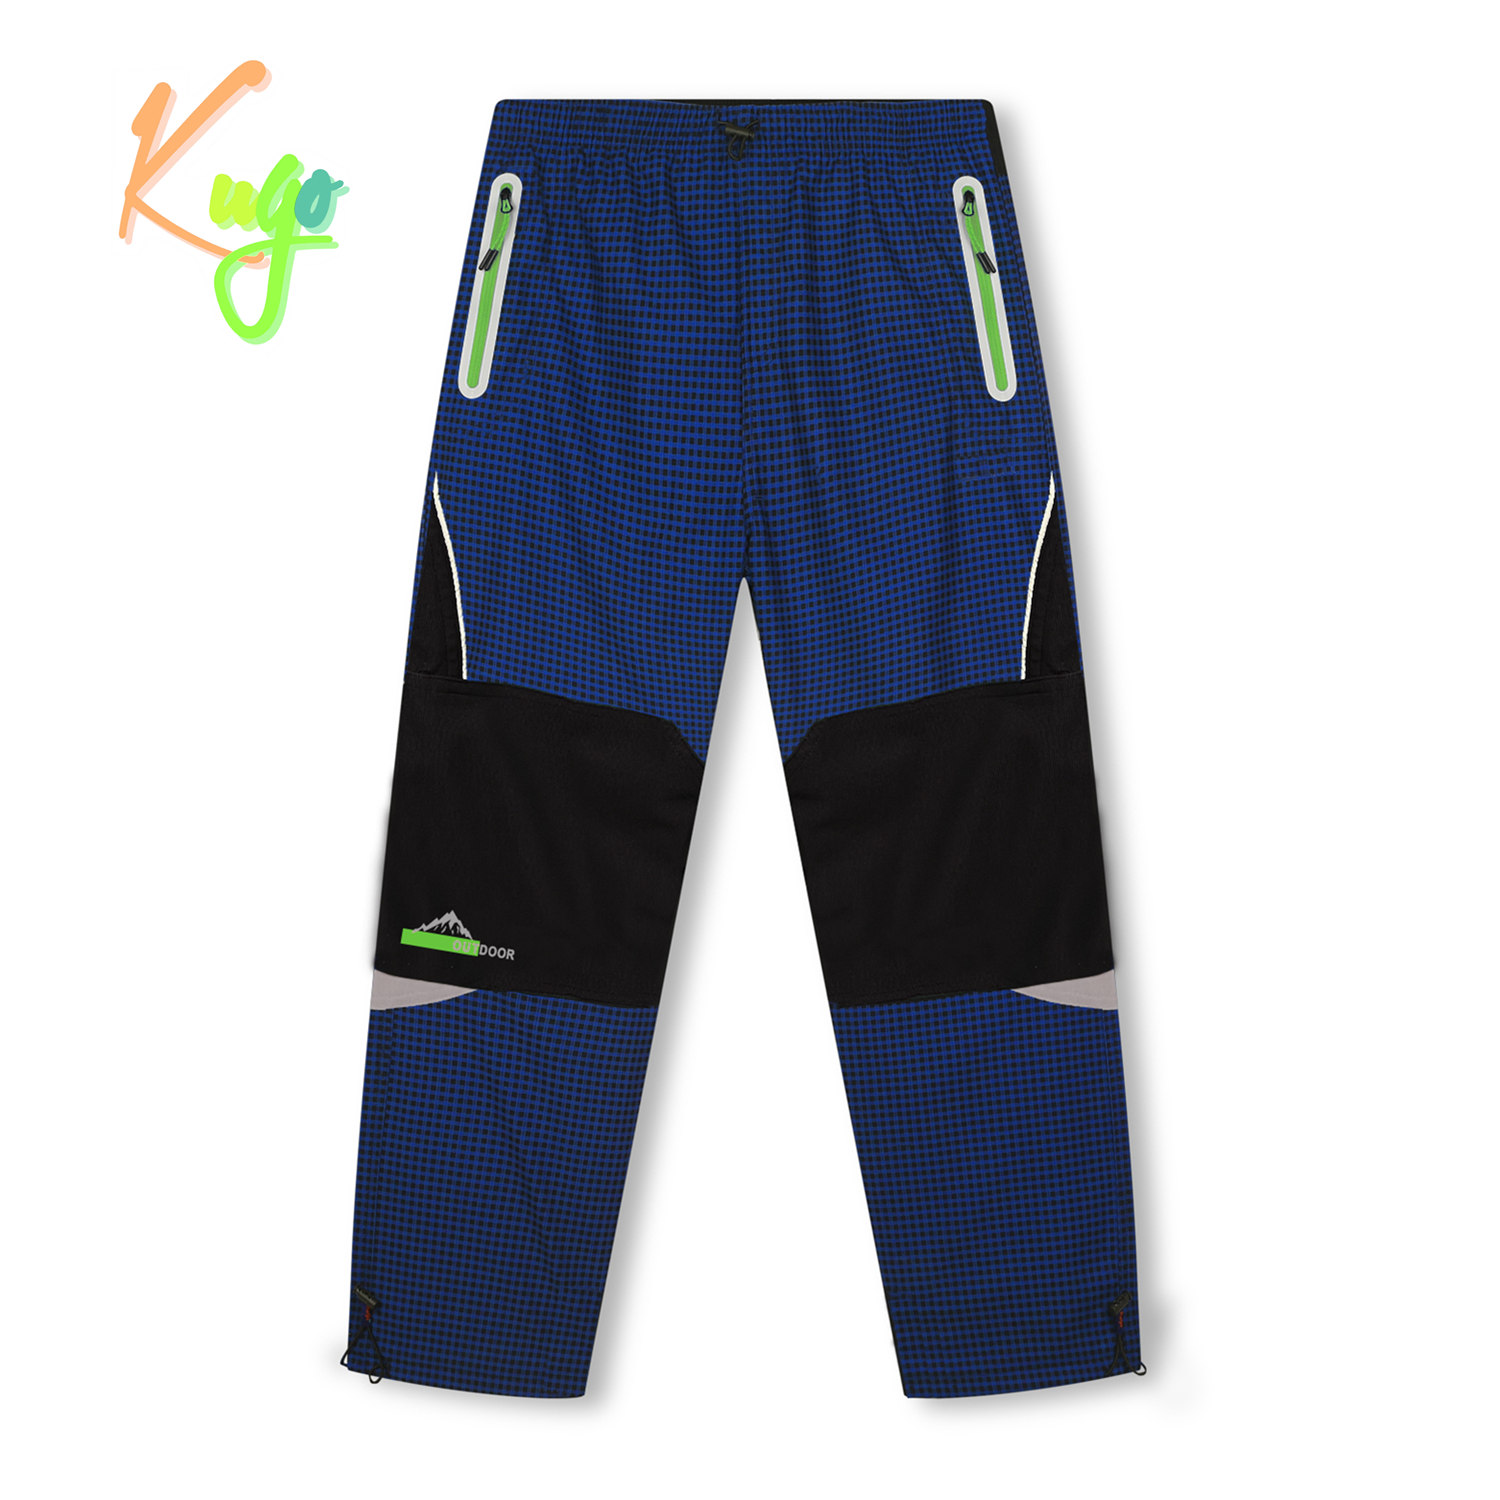 Chlapecké zateplené outdoorové kalhoty - KUGO C7772, modrá/ zelené zipy Barva: Modrá, Velikost: 116